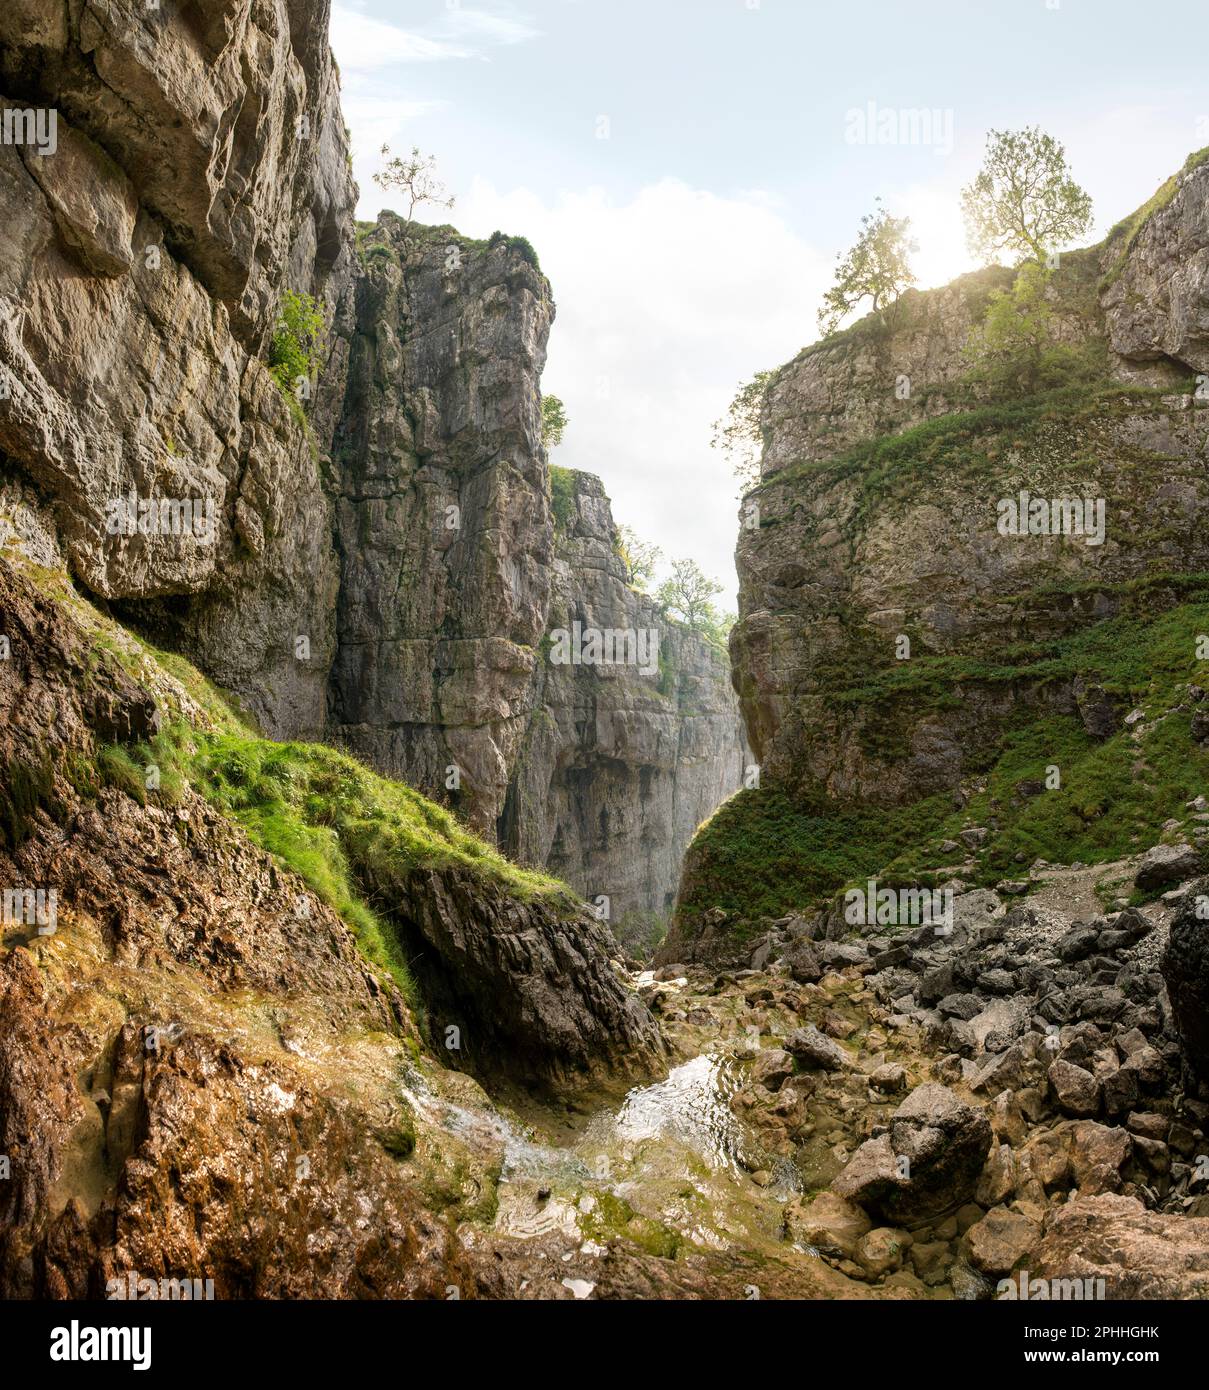 Gordale Scart un burrone calcareo a nord-est di Malham, North Yorkshire, Inghilterra. Camminando tra le cascate e muschio coperto rocce e geologia Foto Stock